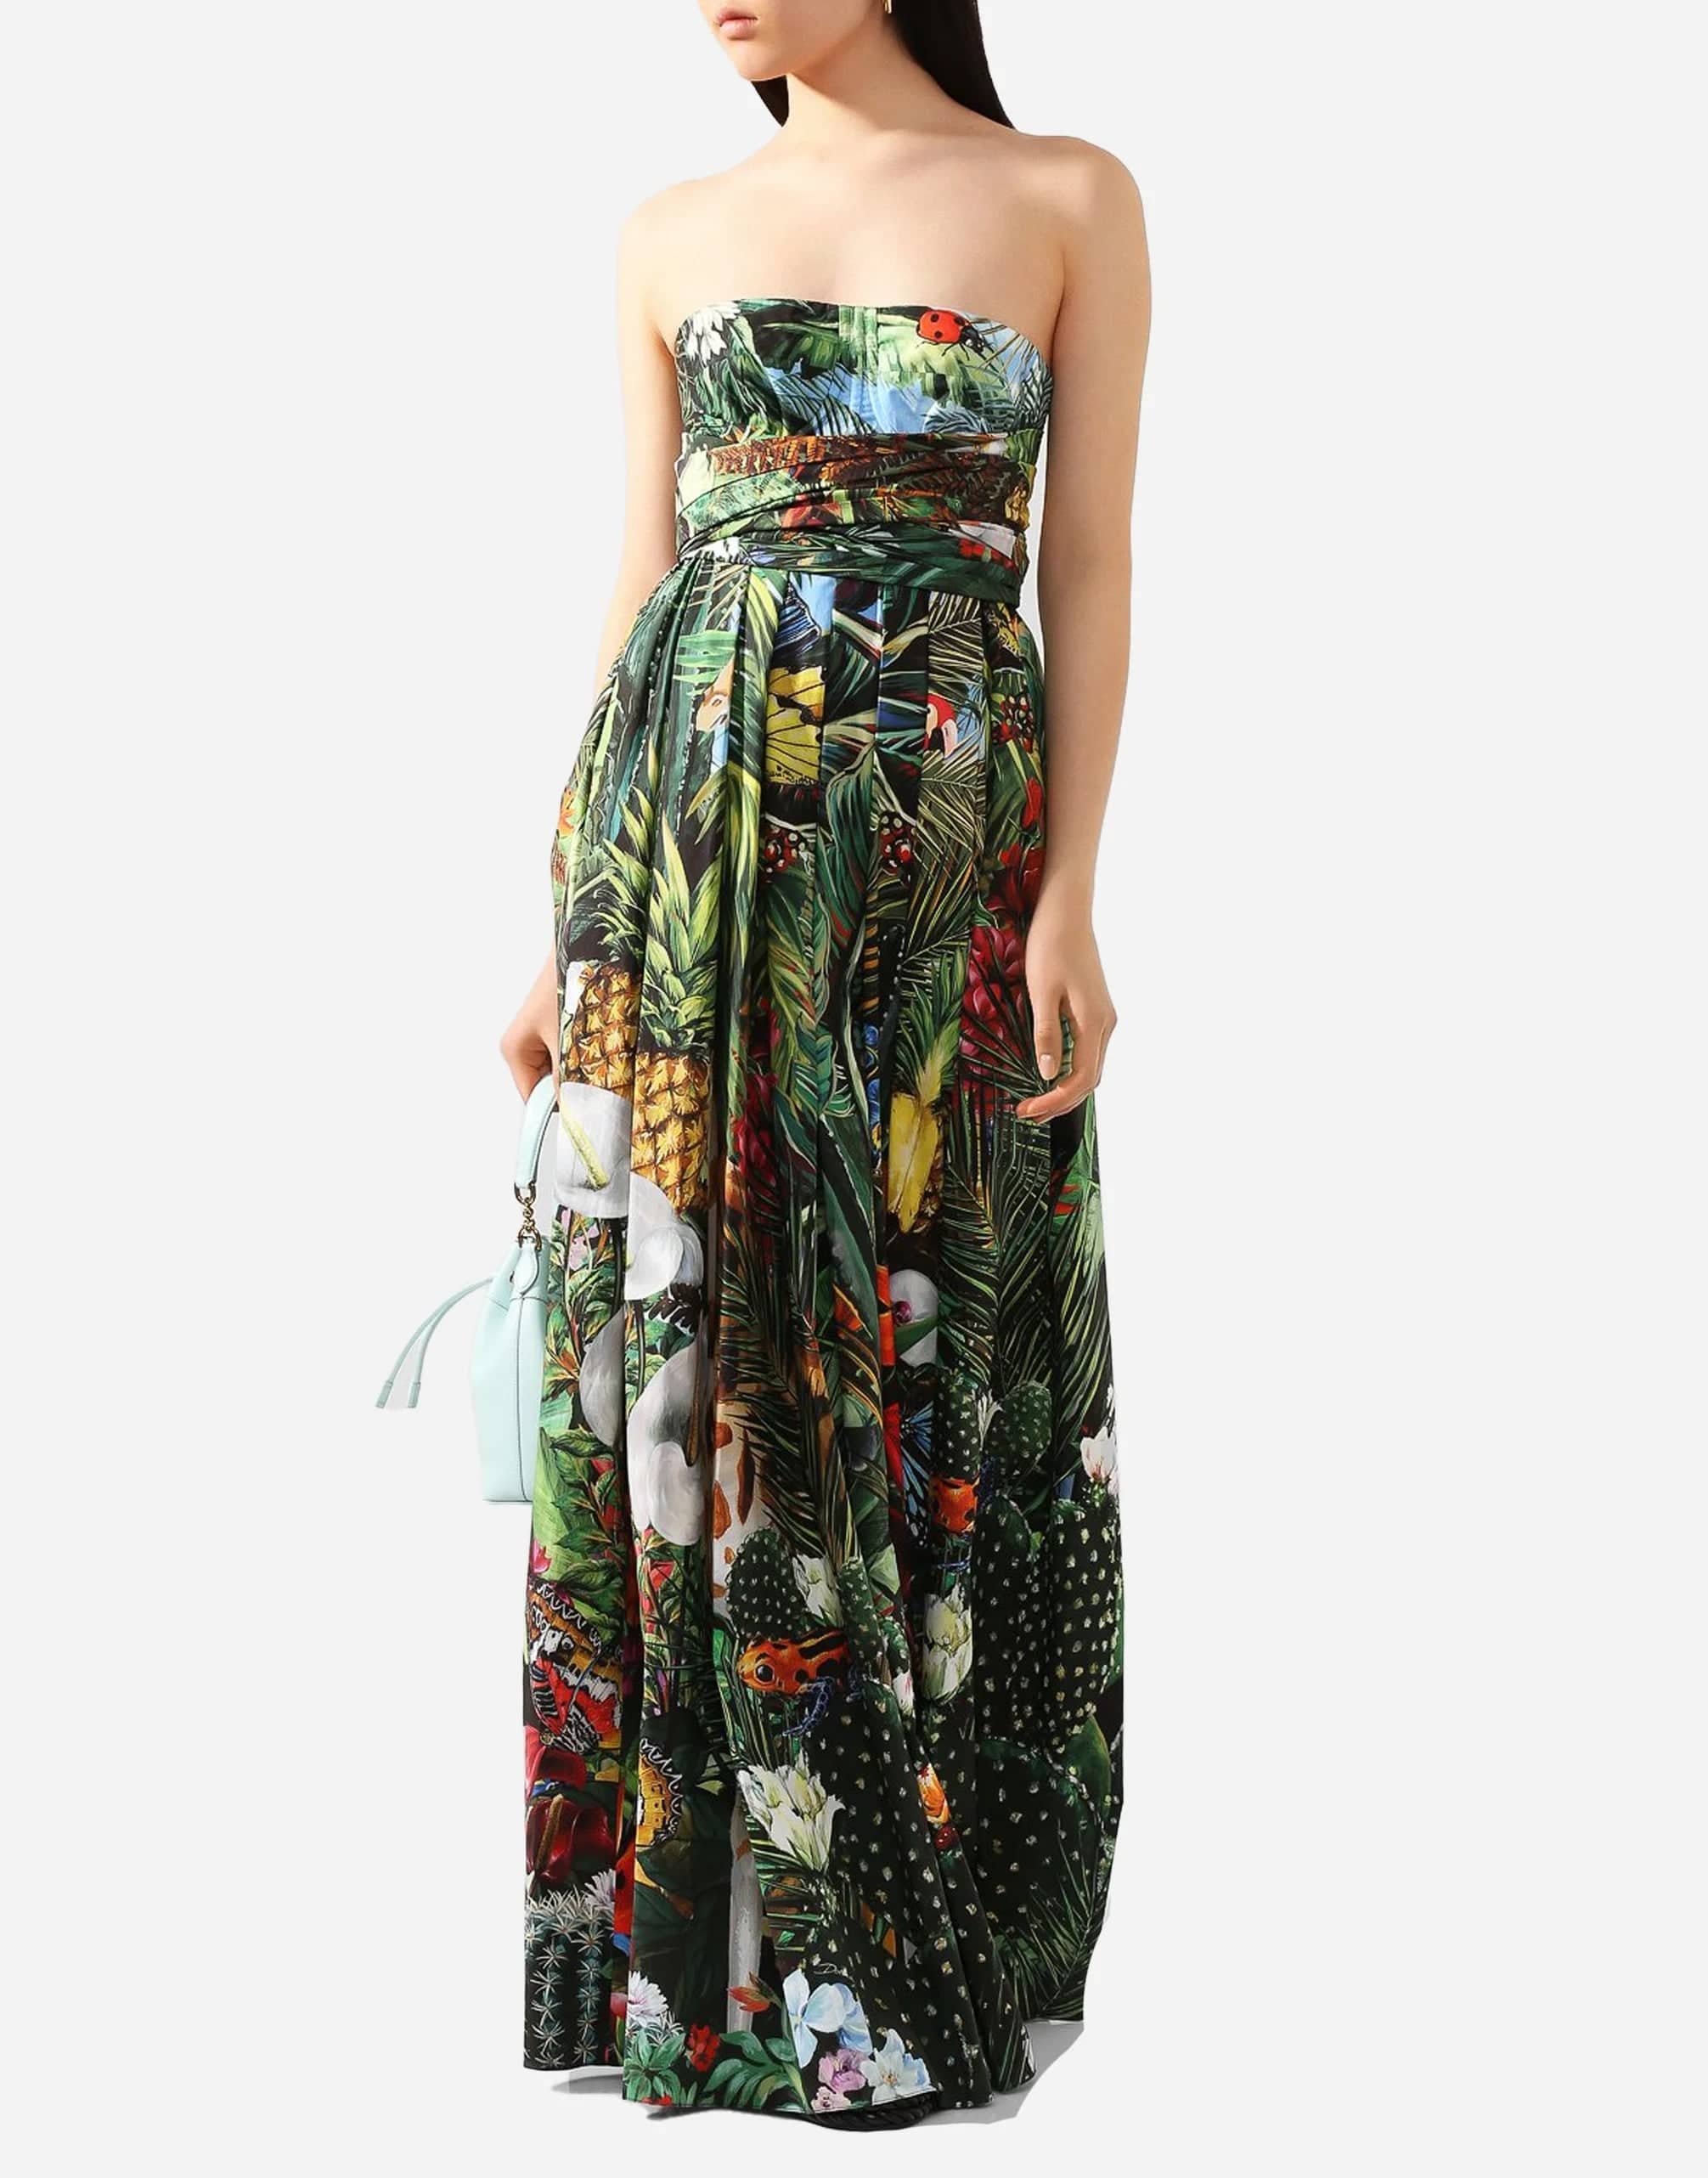 Jungle Print Strapless Maxi Dress